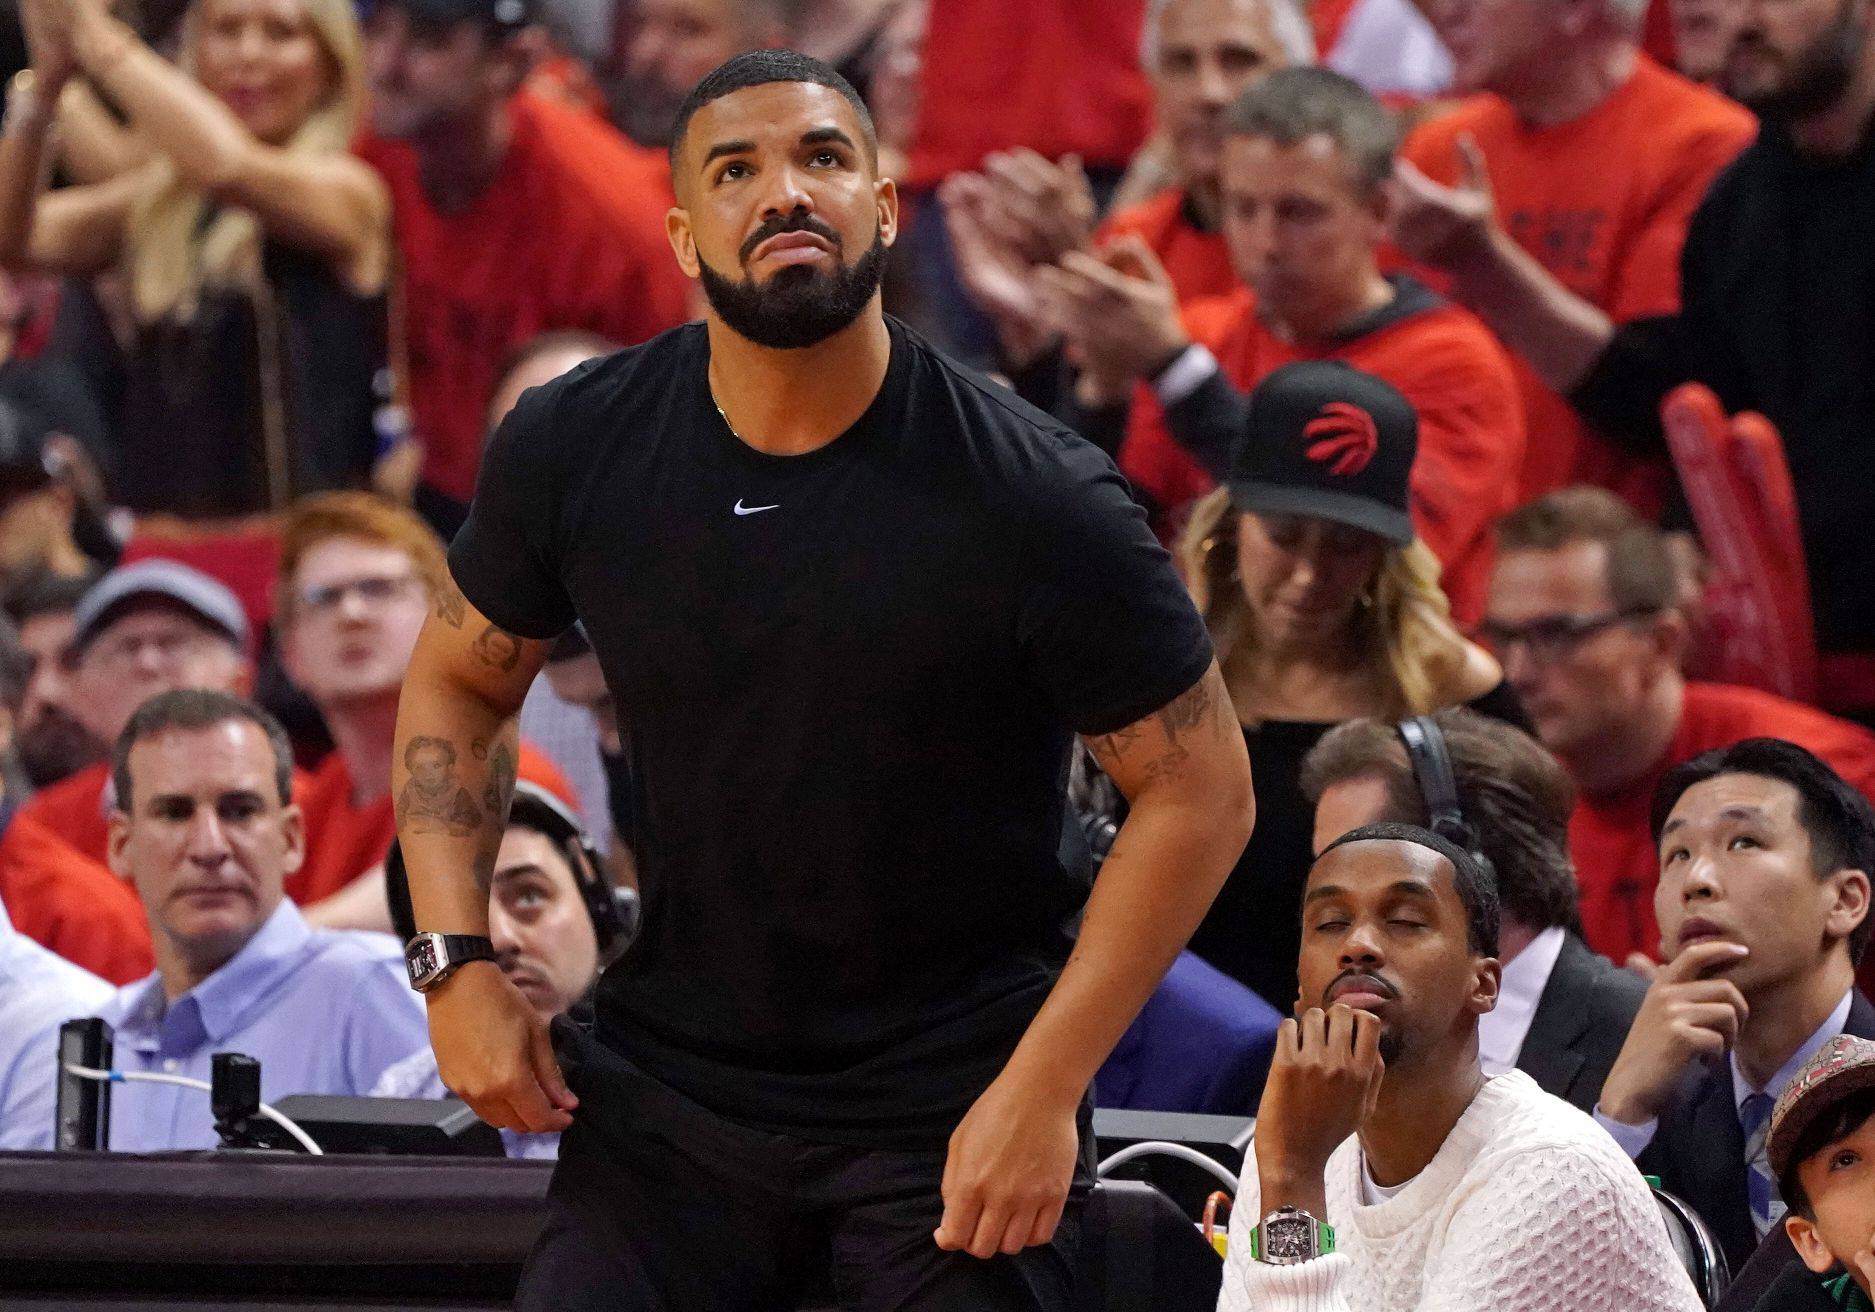 Drake želi istetovirati lik Celine Dion: 'Nemoj, zvat ću ti mamu'